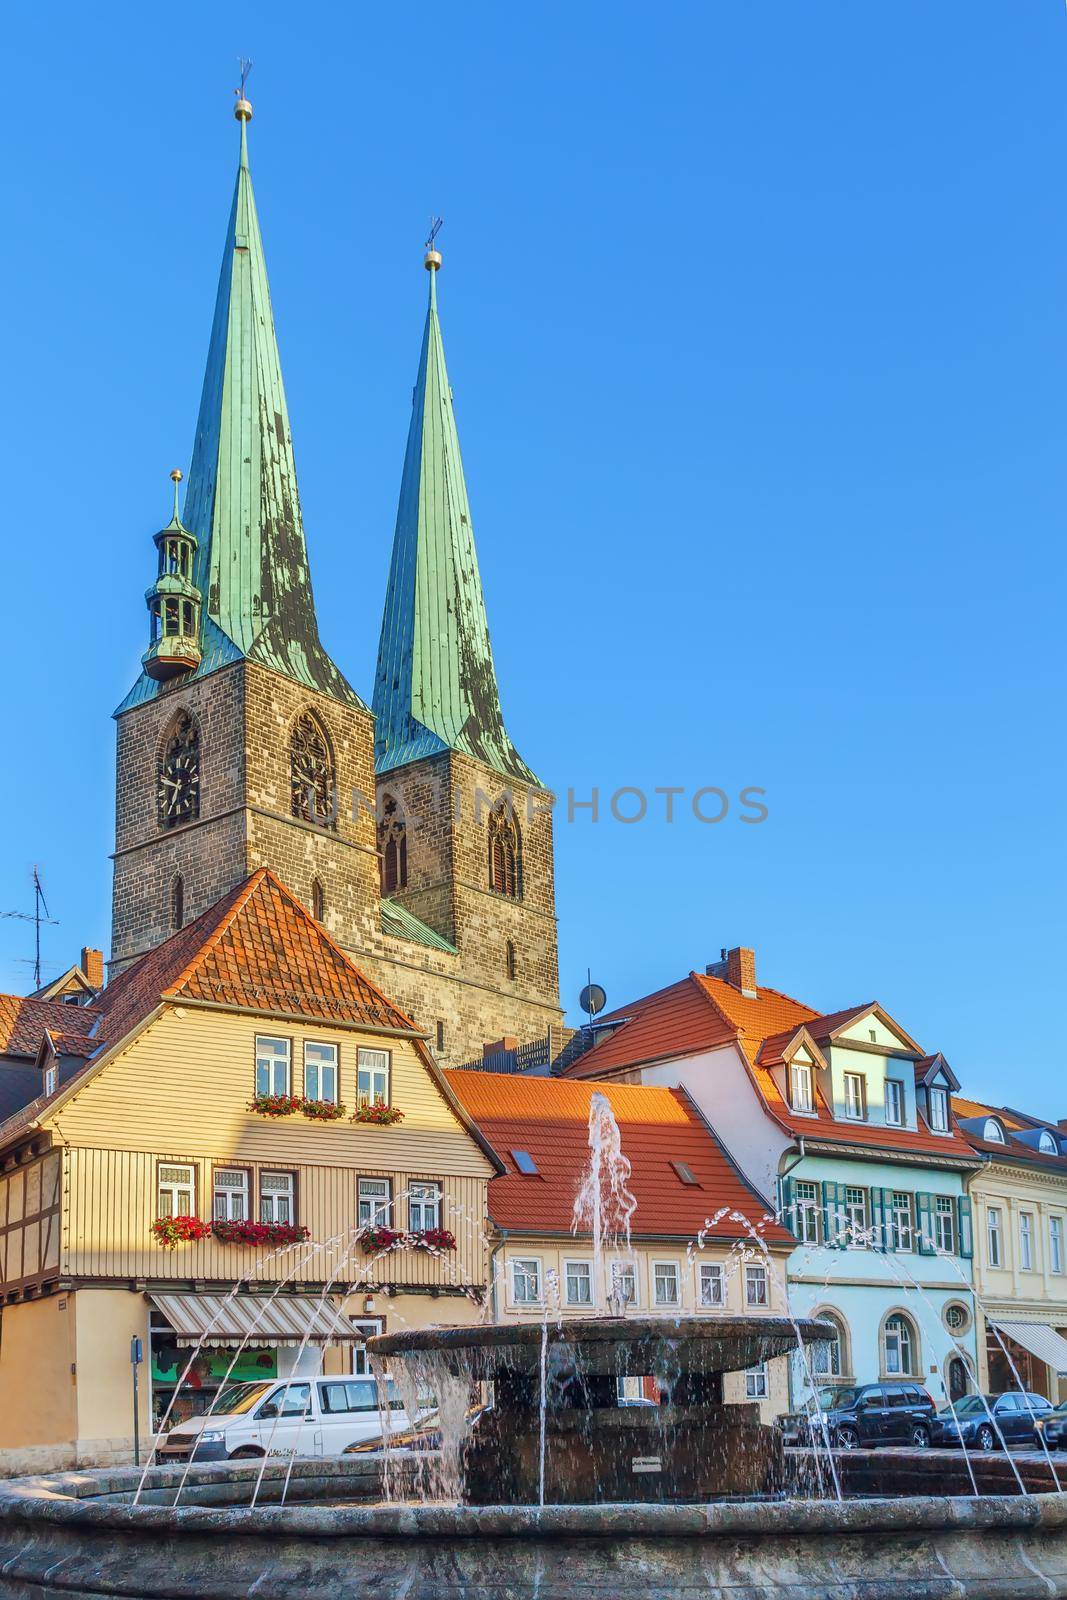 Saint Nicholas church in Quedlinburg, Germany by borisb17